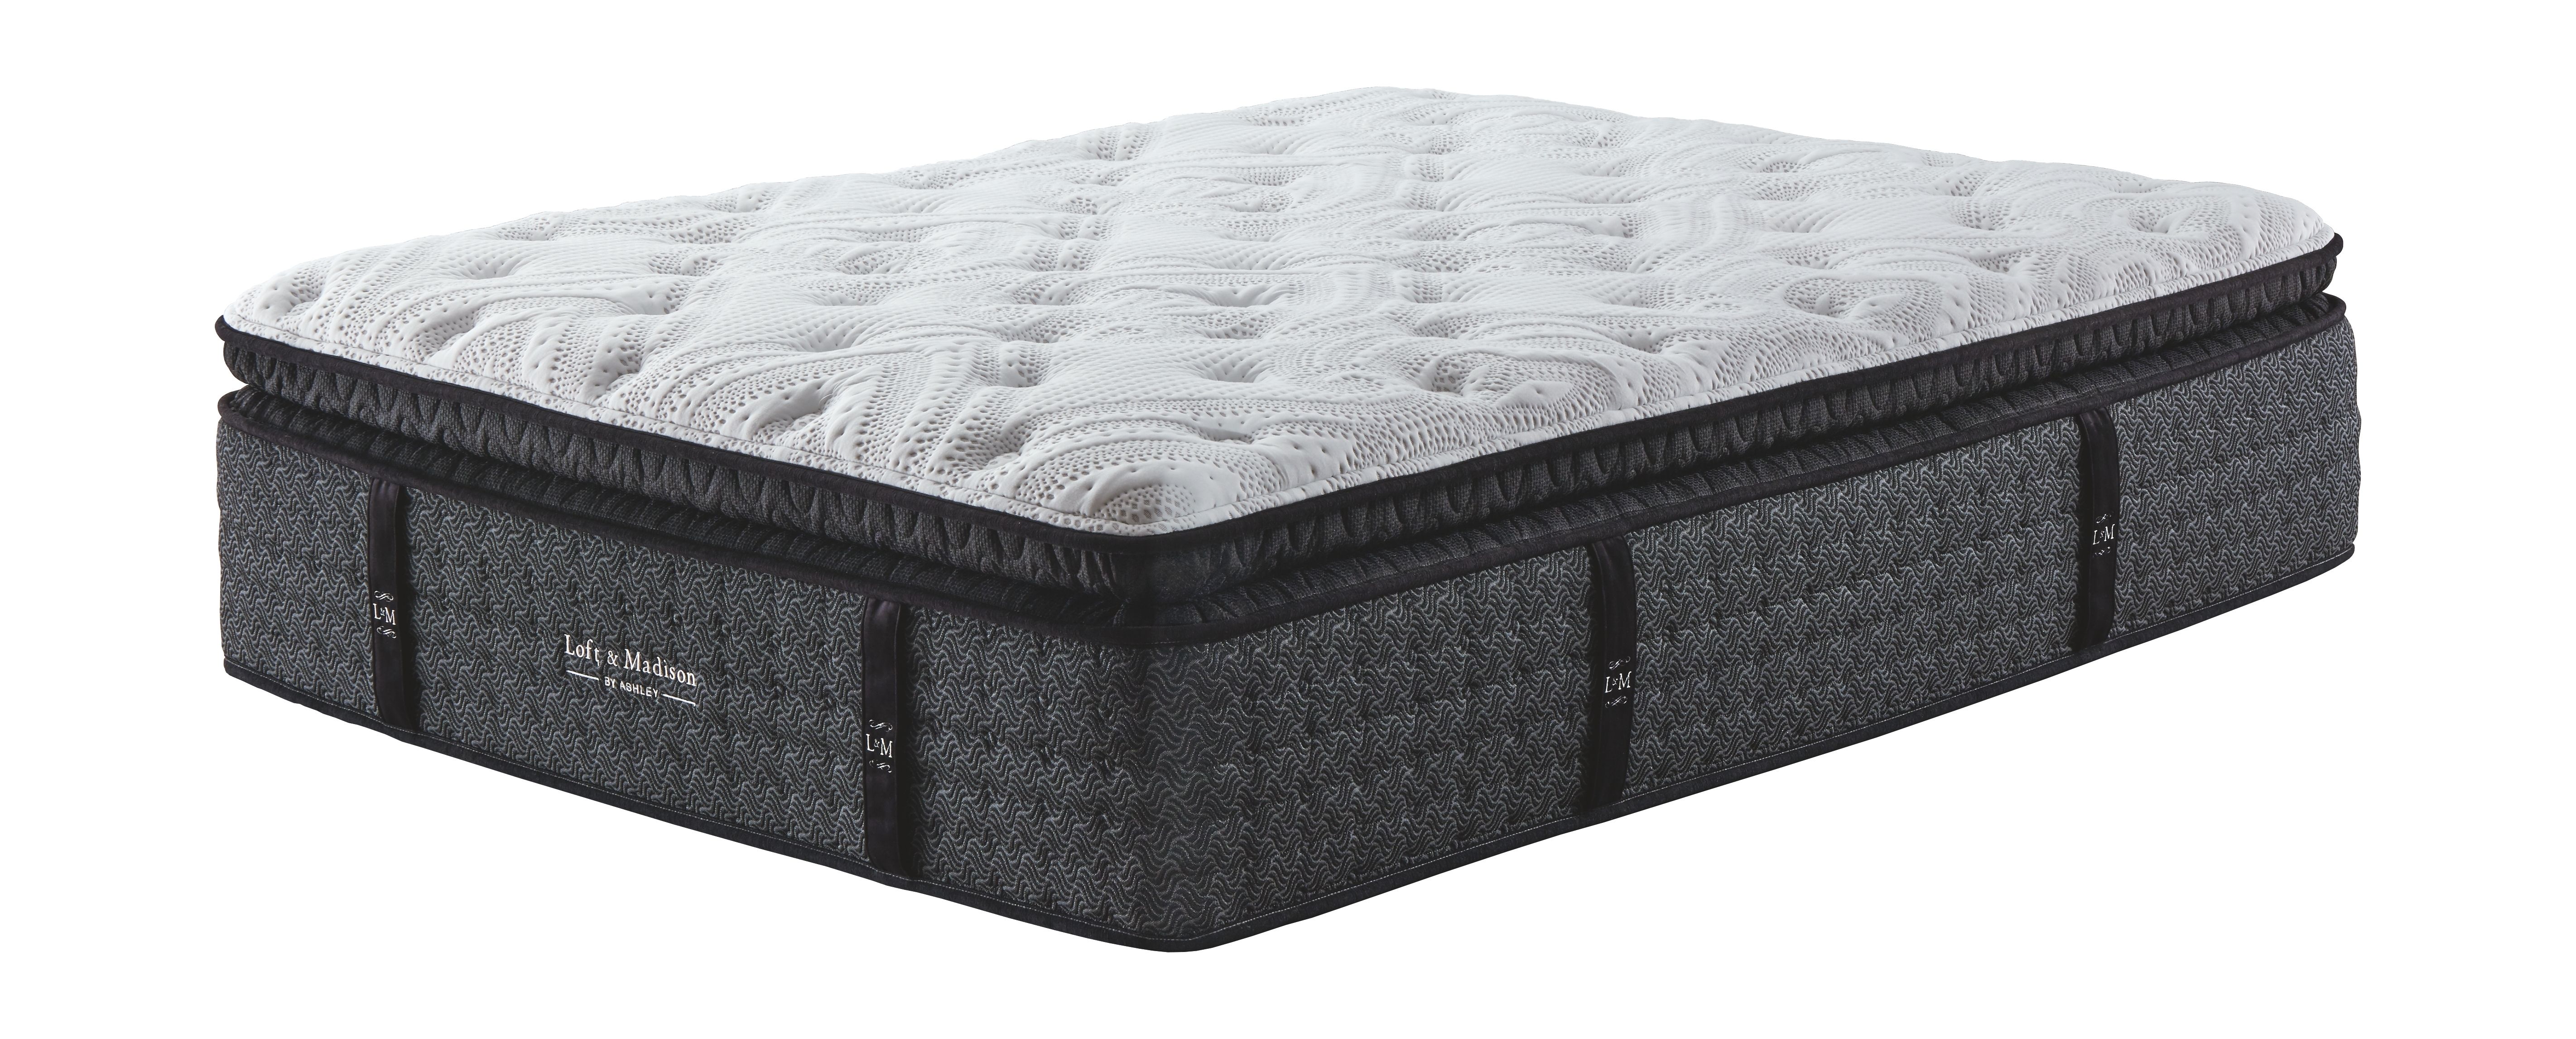 madison pillowtop ultra-plush queen mattress reviews